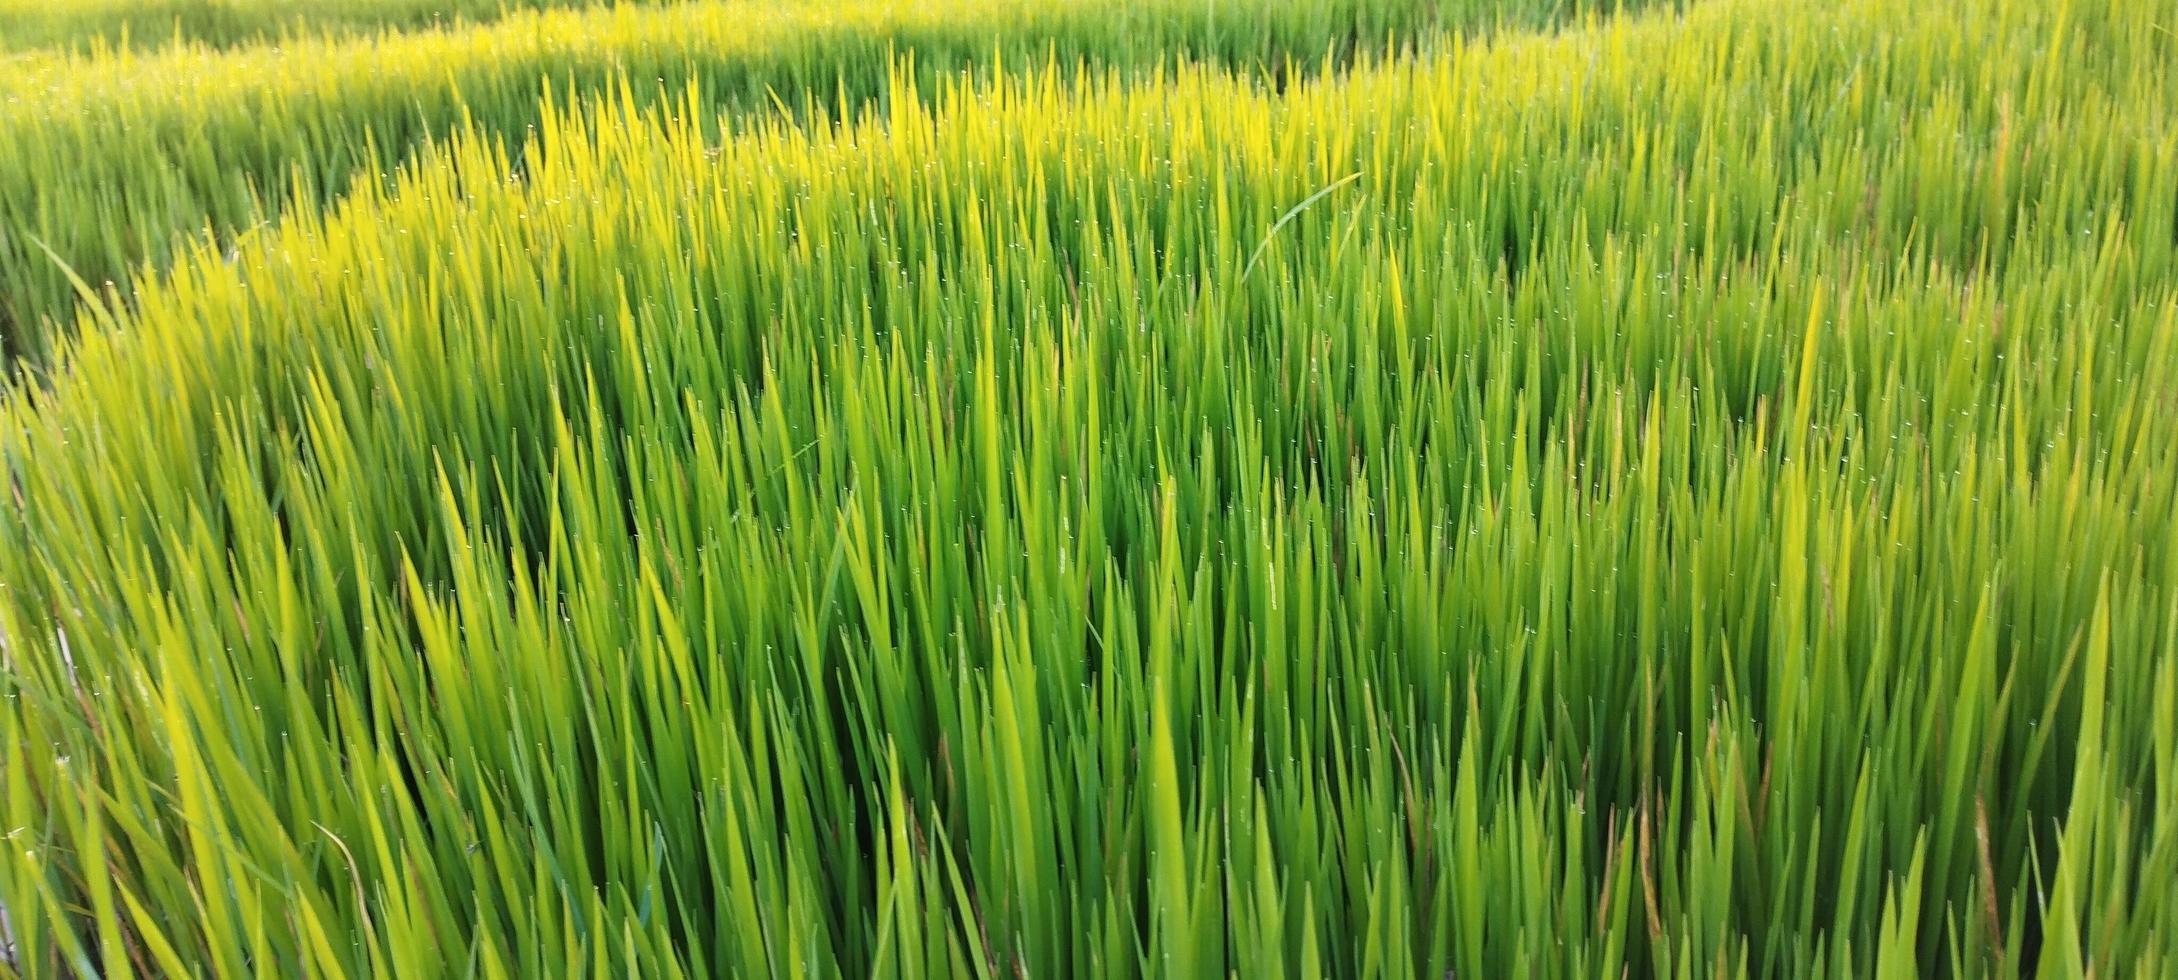 las plantas de arroz verde con charcos de agua se ven hermosas foto